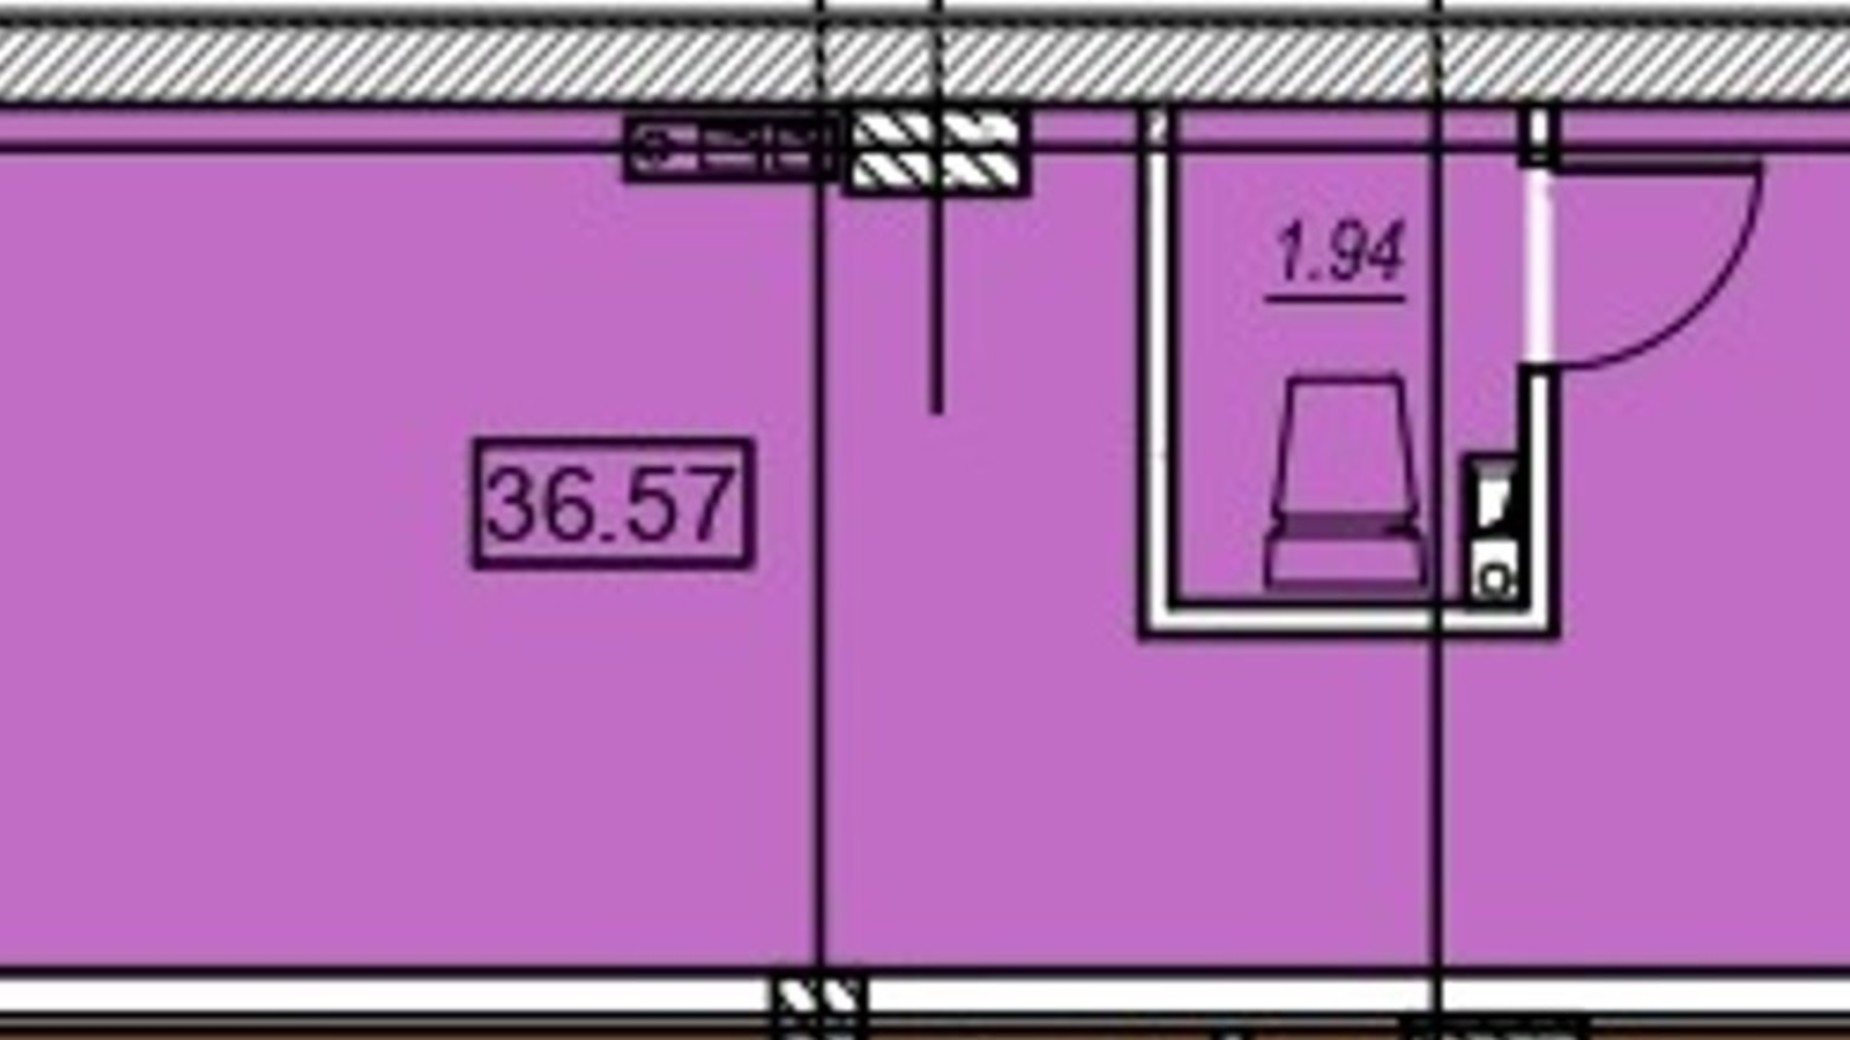 Планування приміщення в ЖК Меридіан 36.57 м², фото 487758